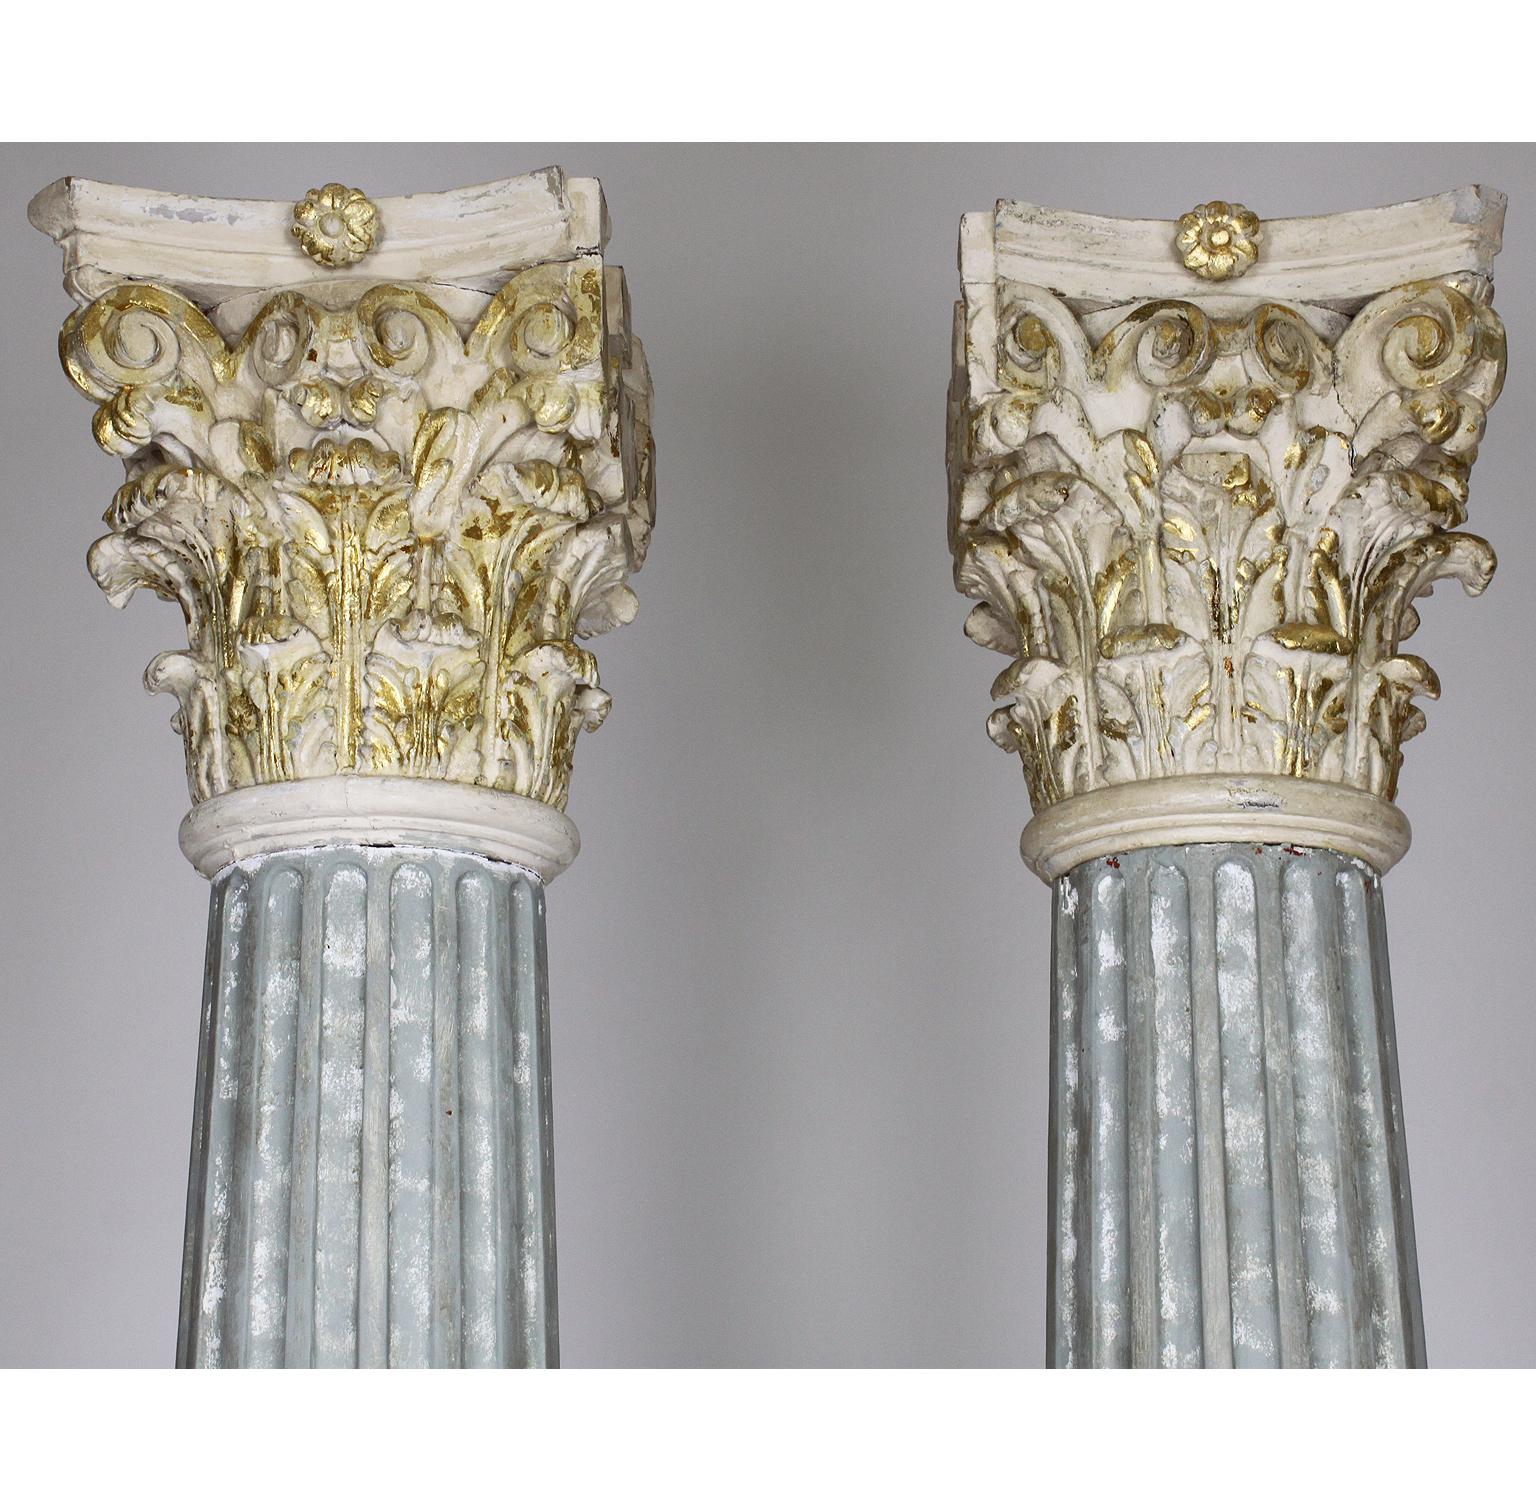 roman style pillars